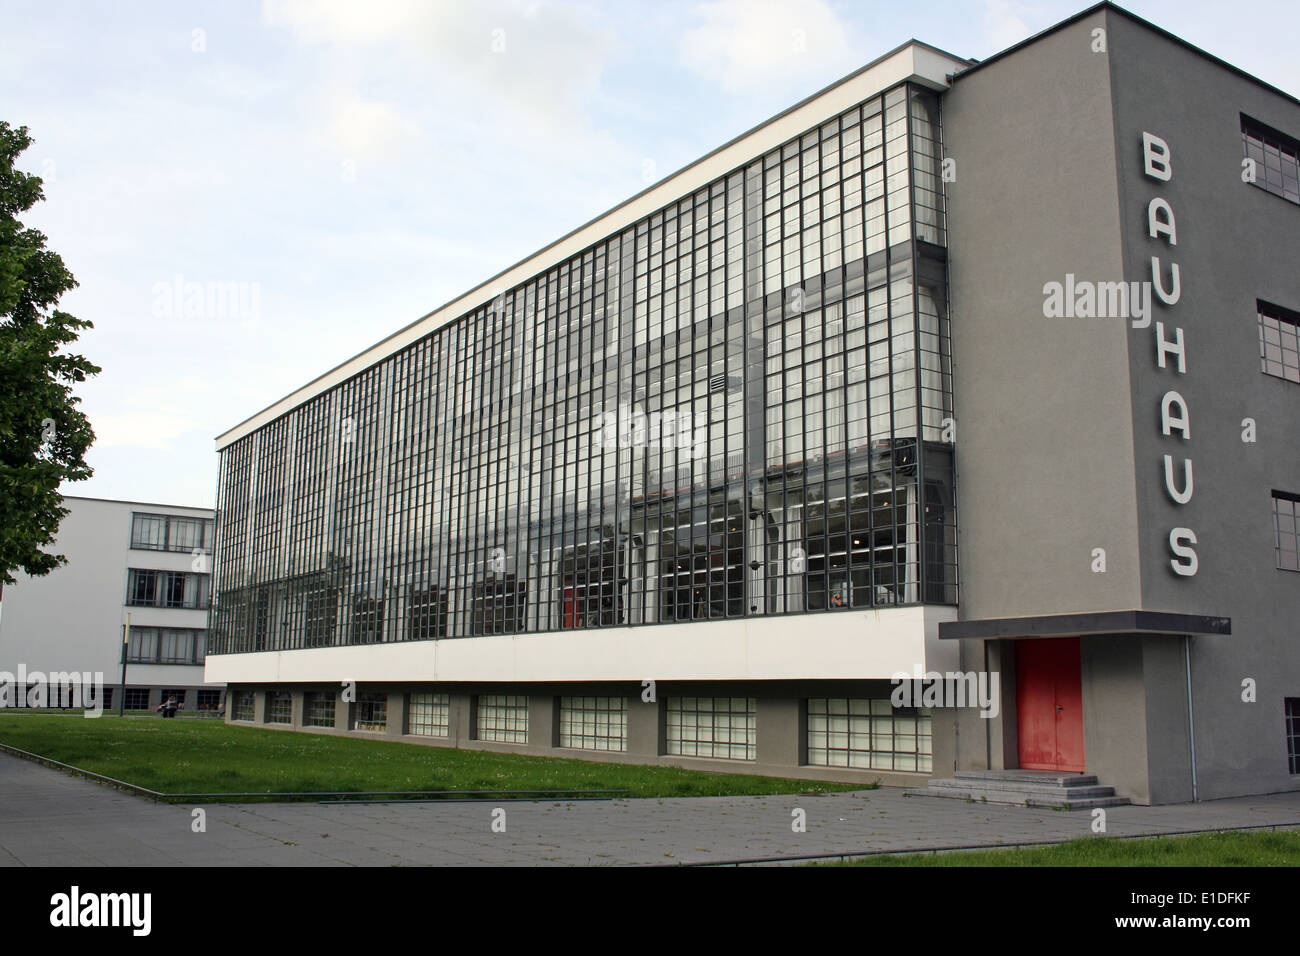 El reformado de la Bauhaus en Dessau, Alemania, uno de los grandes edificios de la definición de principios del movimiento moderno en la arquitectura, el arquitecto Walter Gropius Foto de stock